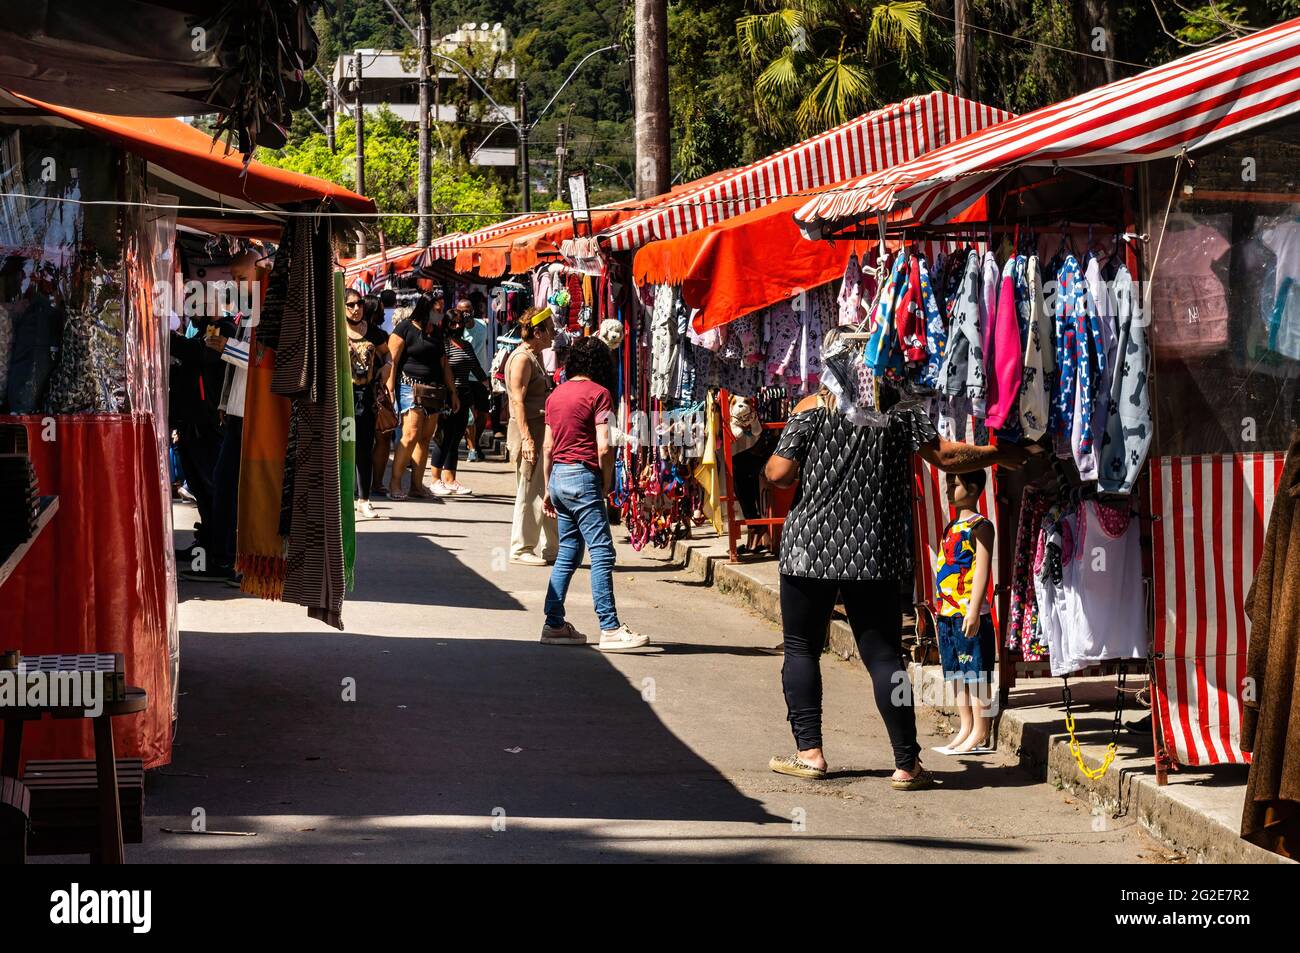 Les personnes marchant et parcourant des articles à vendre dans Alto Fair, un marché public situé dans les environs de la place Higino da Silveira, quartier Alto. Banque D'Images